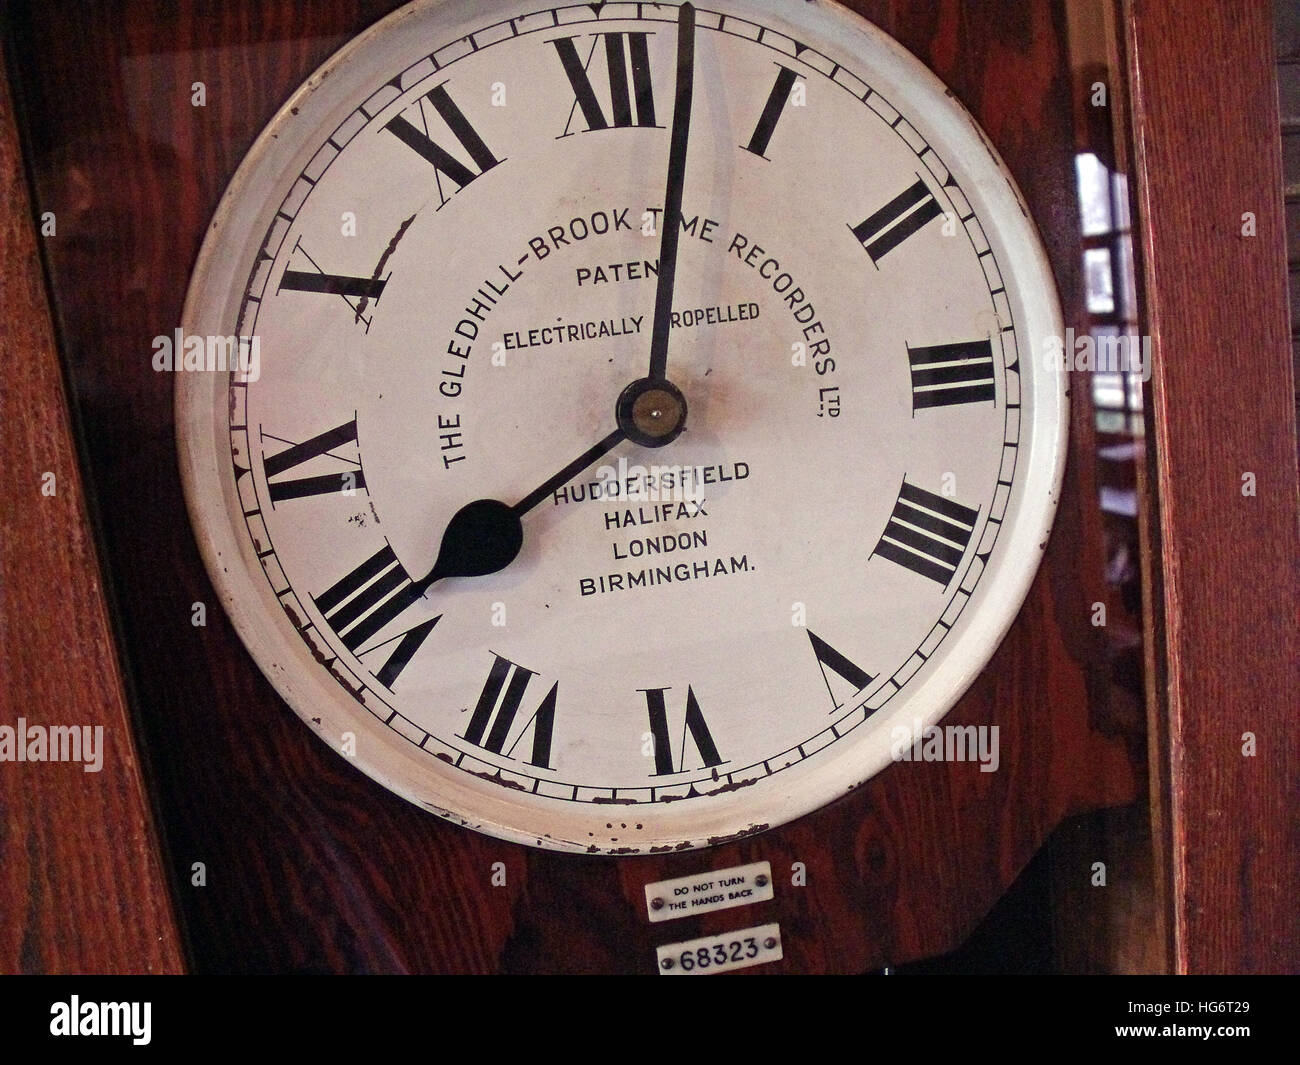 ClockingIn Machine, Gledhill Brook,enregistreurs de temps Banque D'Images